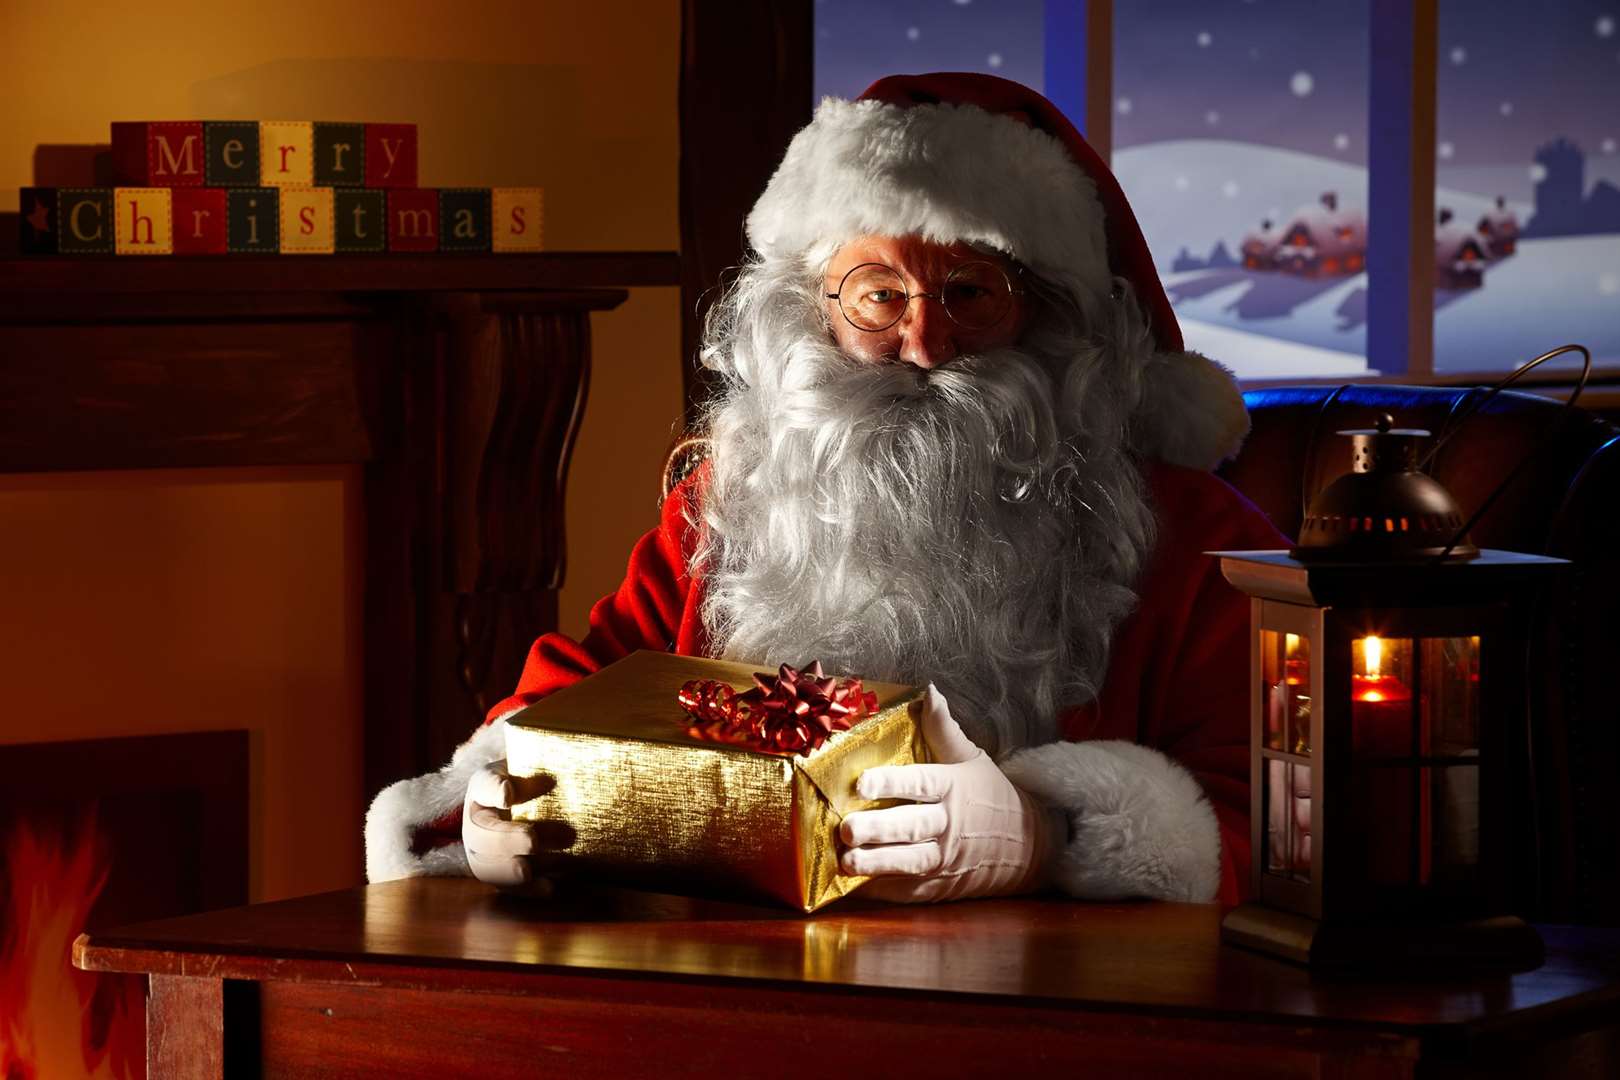 Santa will be stopping at various Kent attractions this Christmas